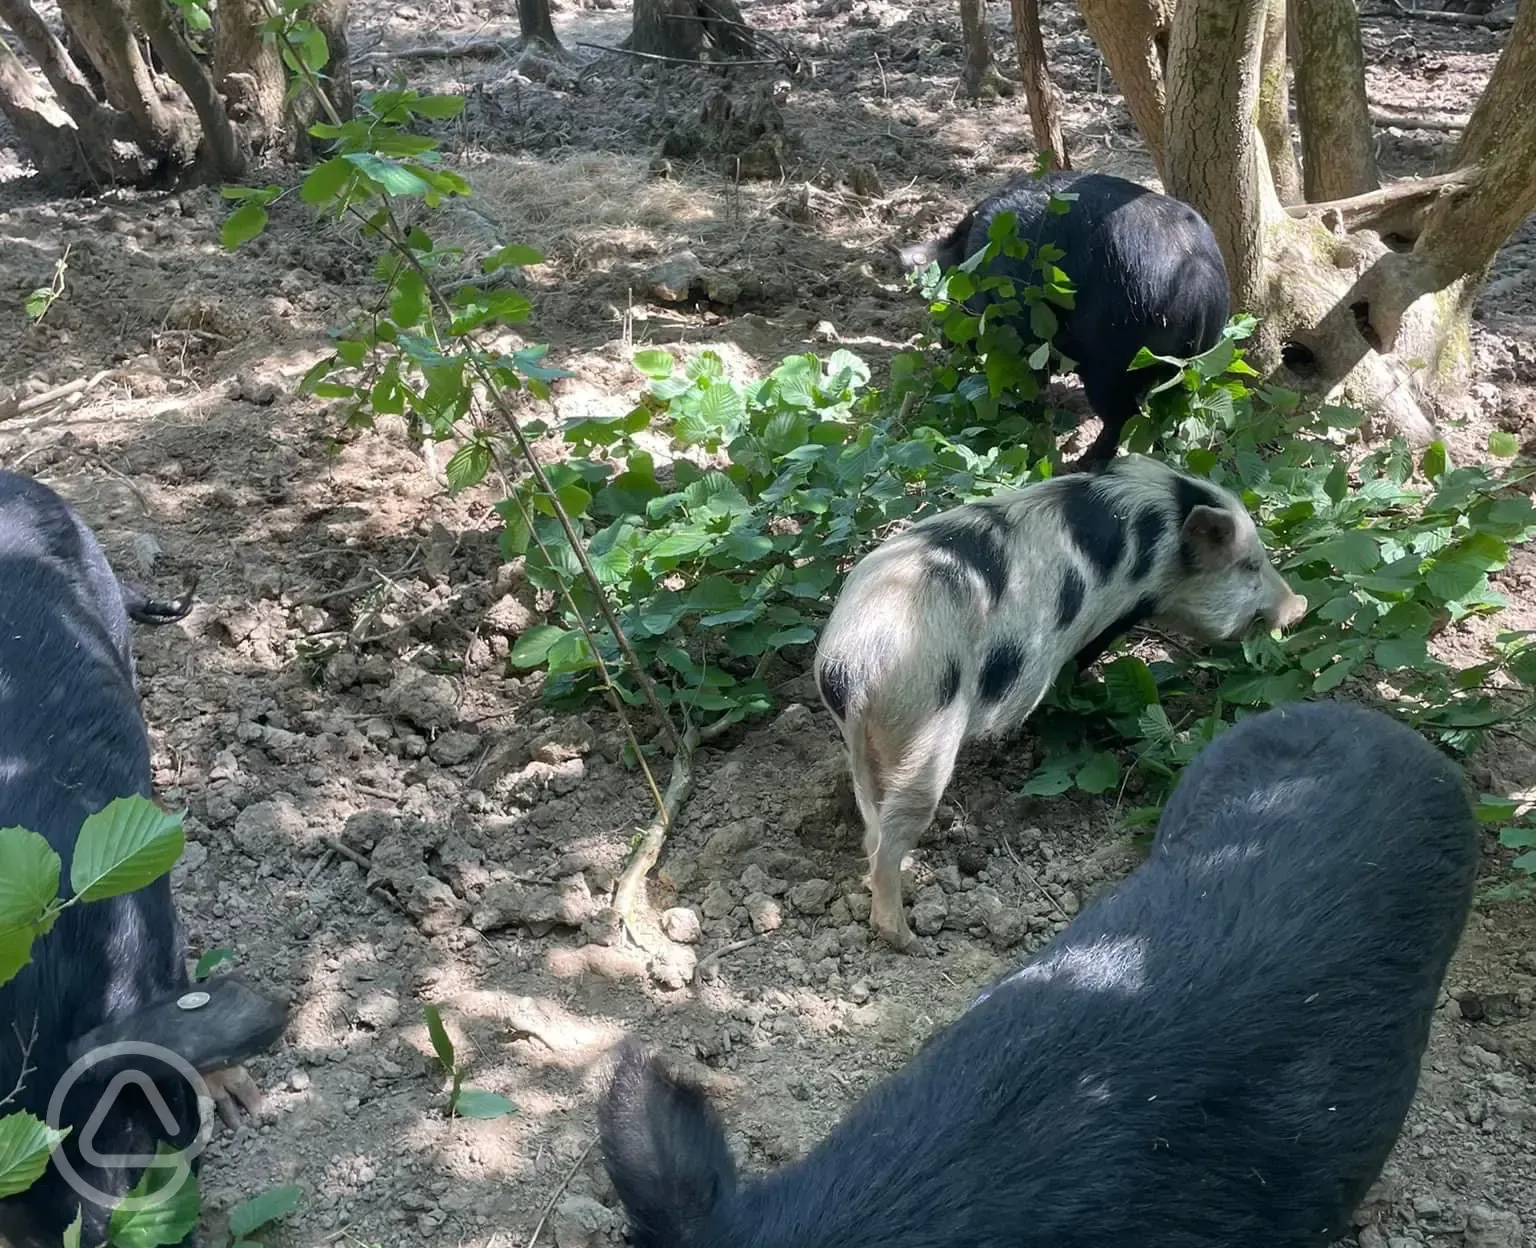 Petting farm pigs